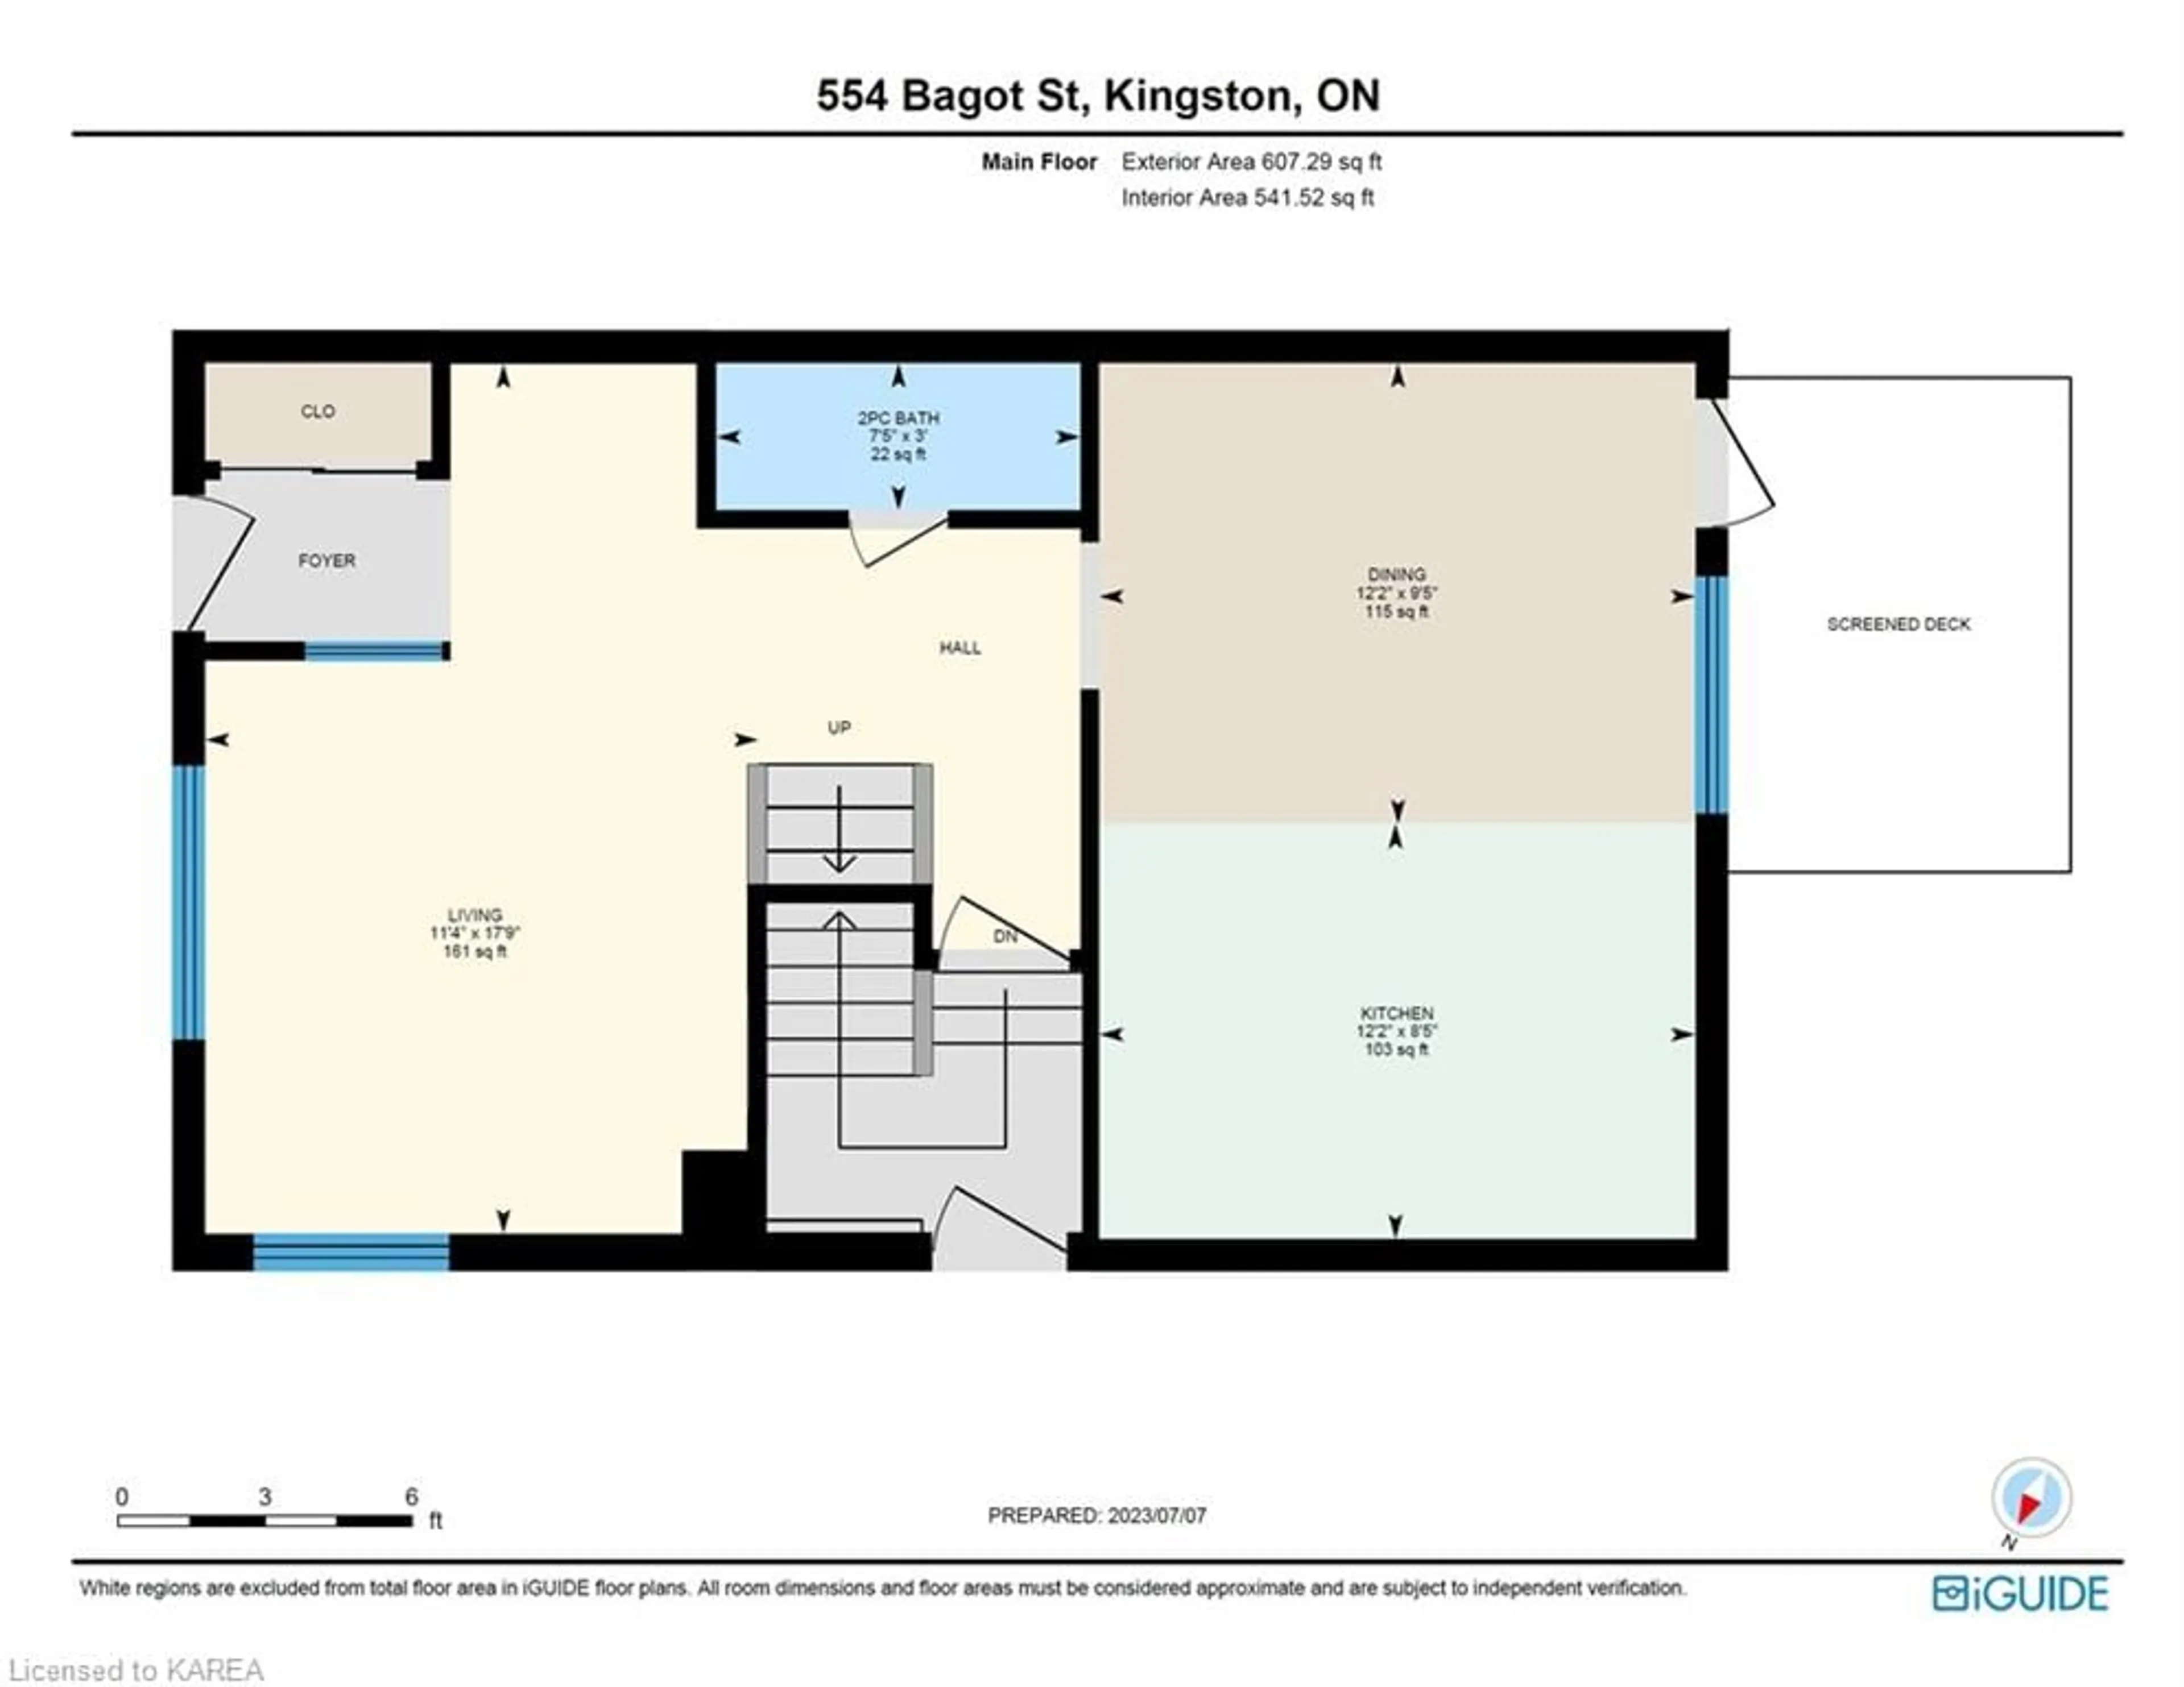 Floor plan for 554 Bagot St, Kingston Ontario K7K 3C9